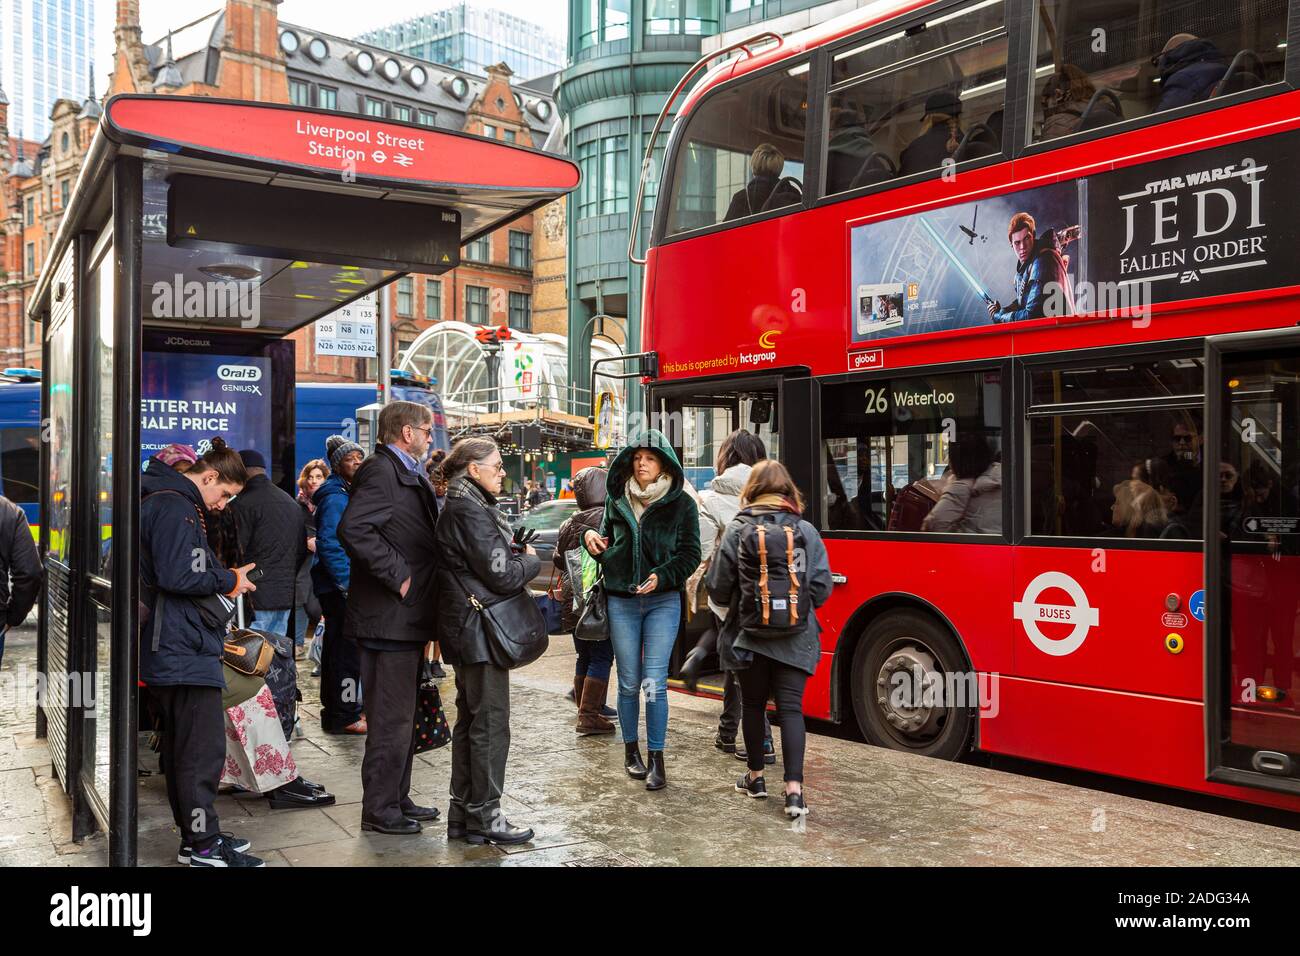 Un bus rouge londonien rempli de passagers protégeant contre la transmission omicron à la gare de Liverpool Street Station Londres, Angleterre, Royaume-Uni Banque D'Images